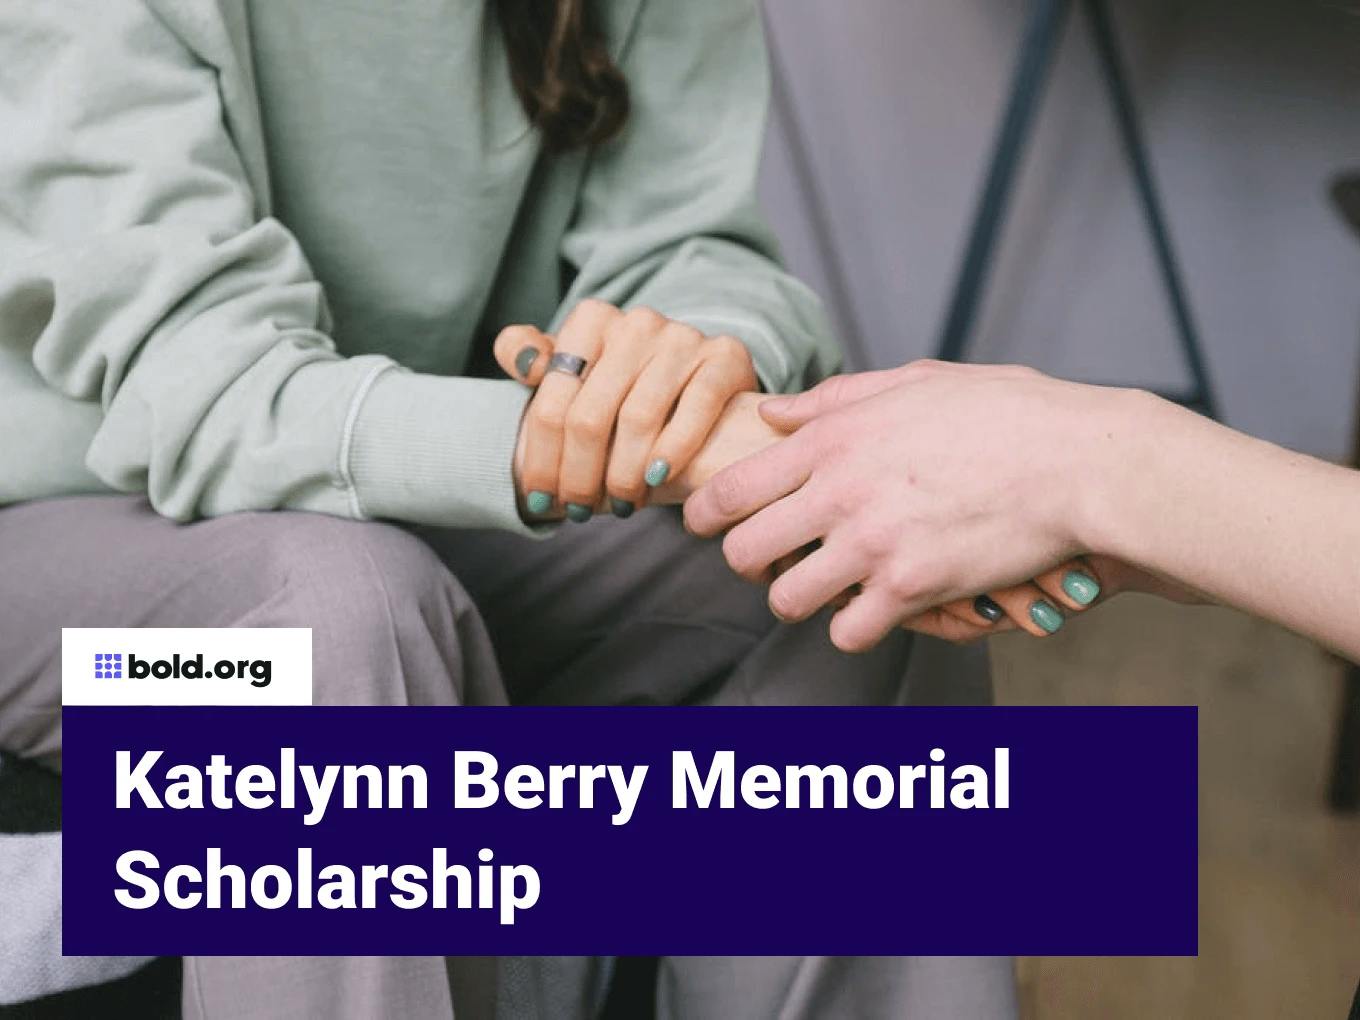 Katelynn Berry Memorial Scholarship